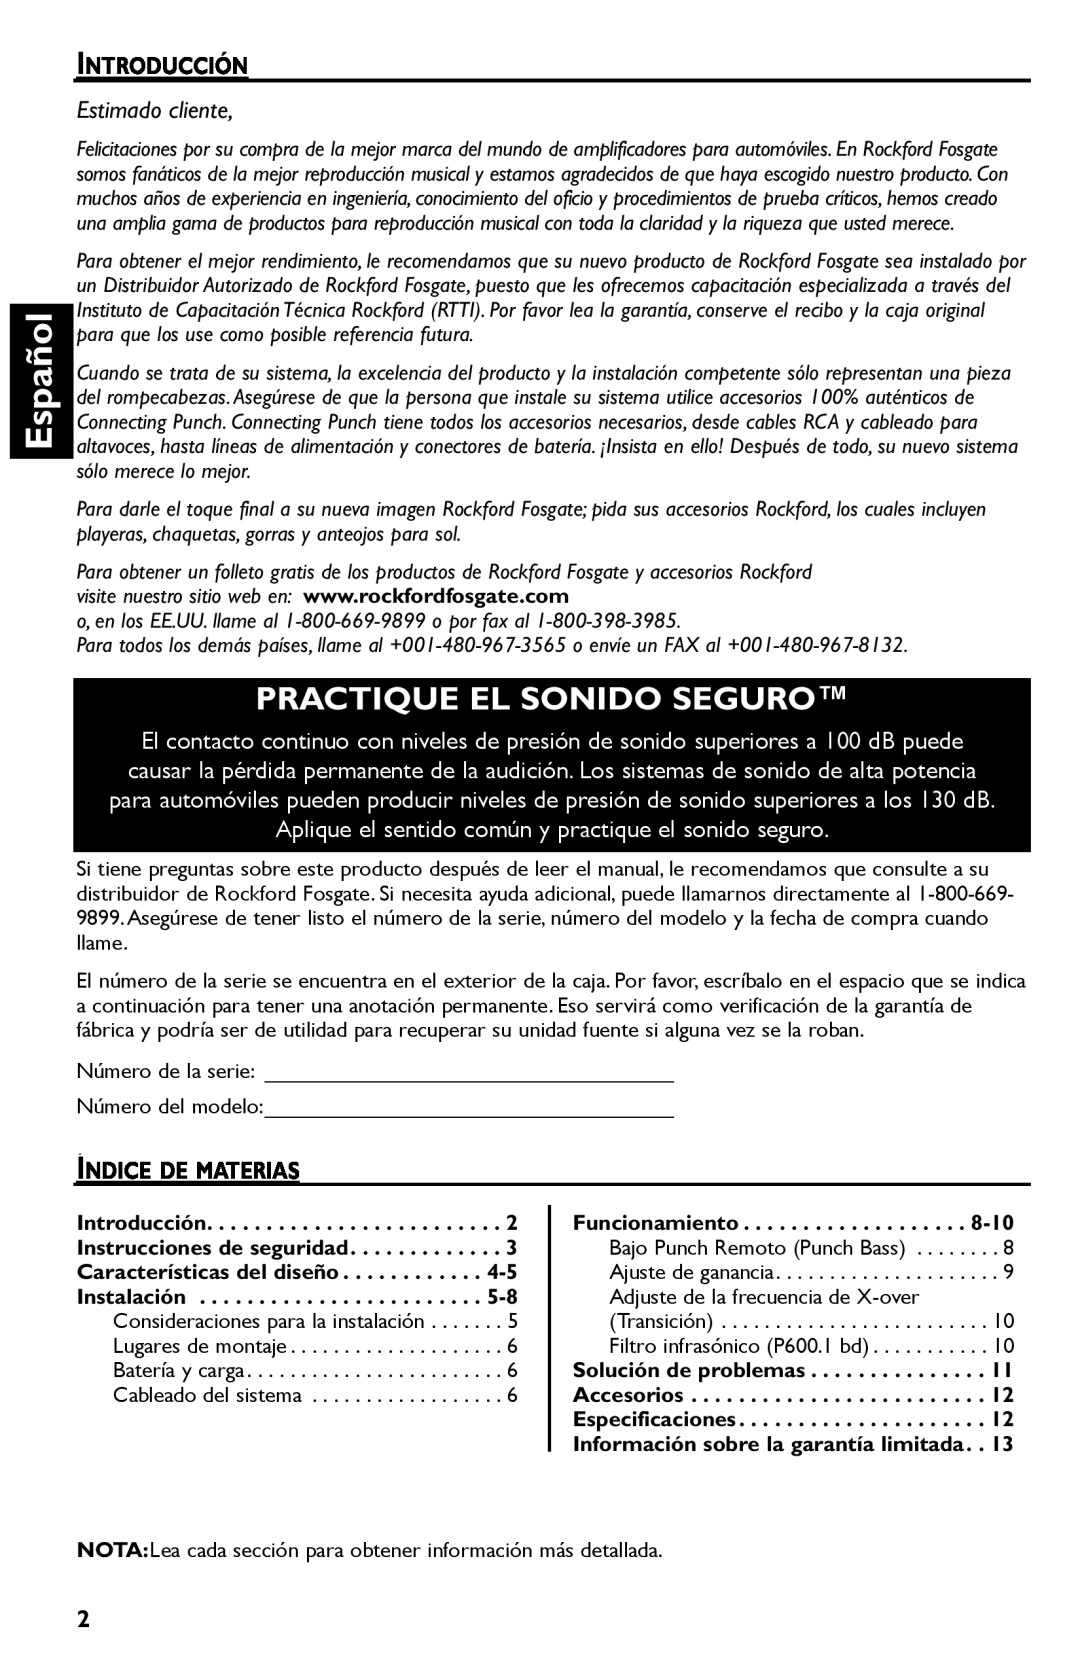 Rockford Fosgate P600..I bd manual Español, Practique El Sonido Seguro, Introducción, Estimado cliente, Índice De Materias 